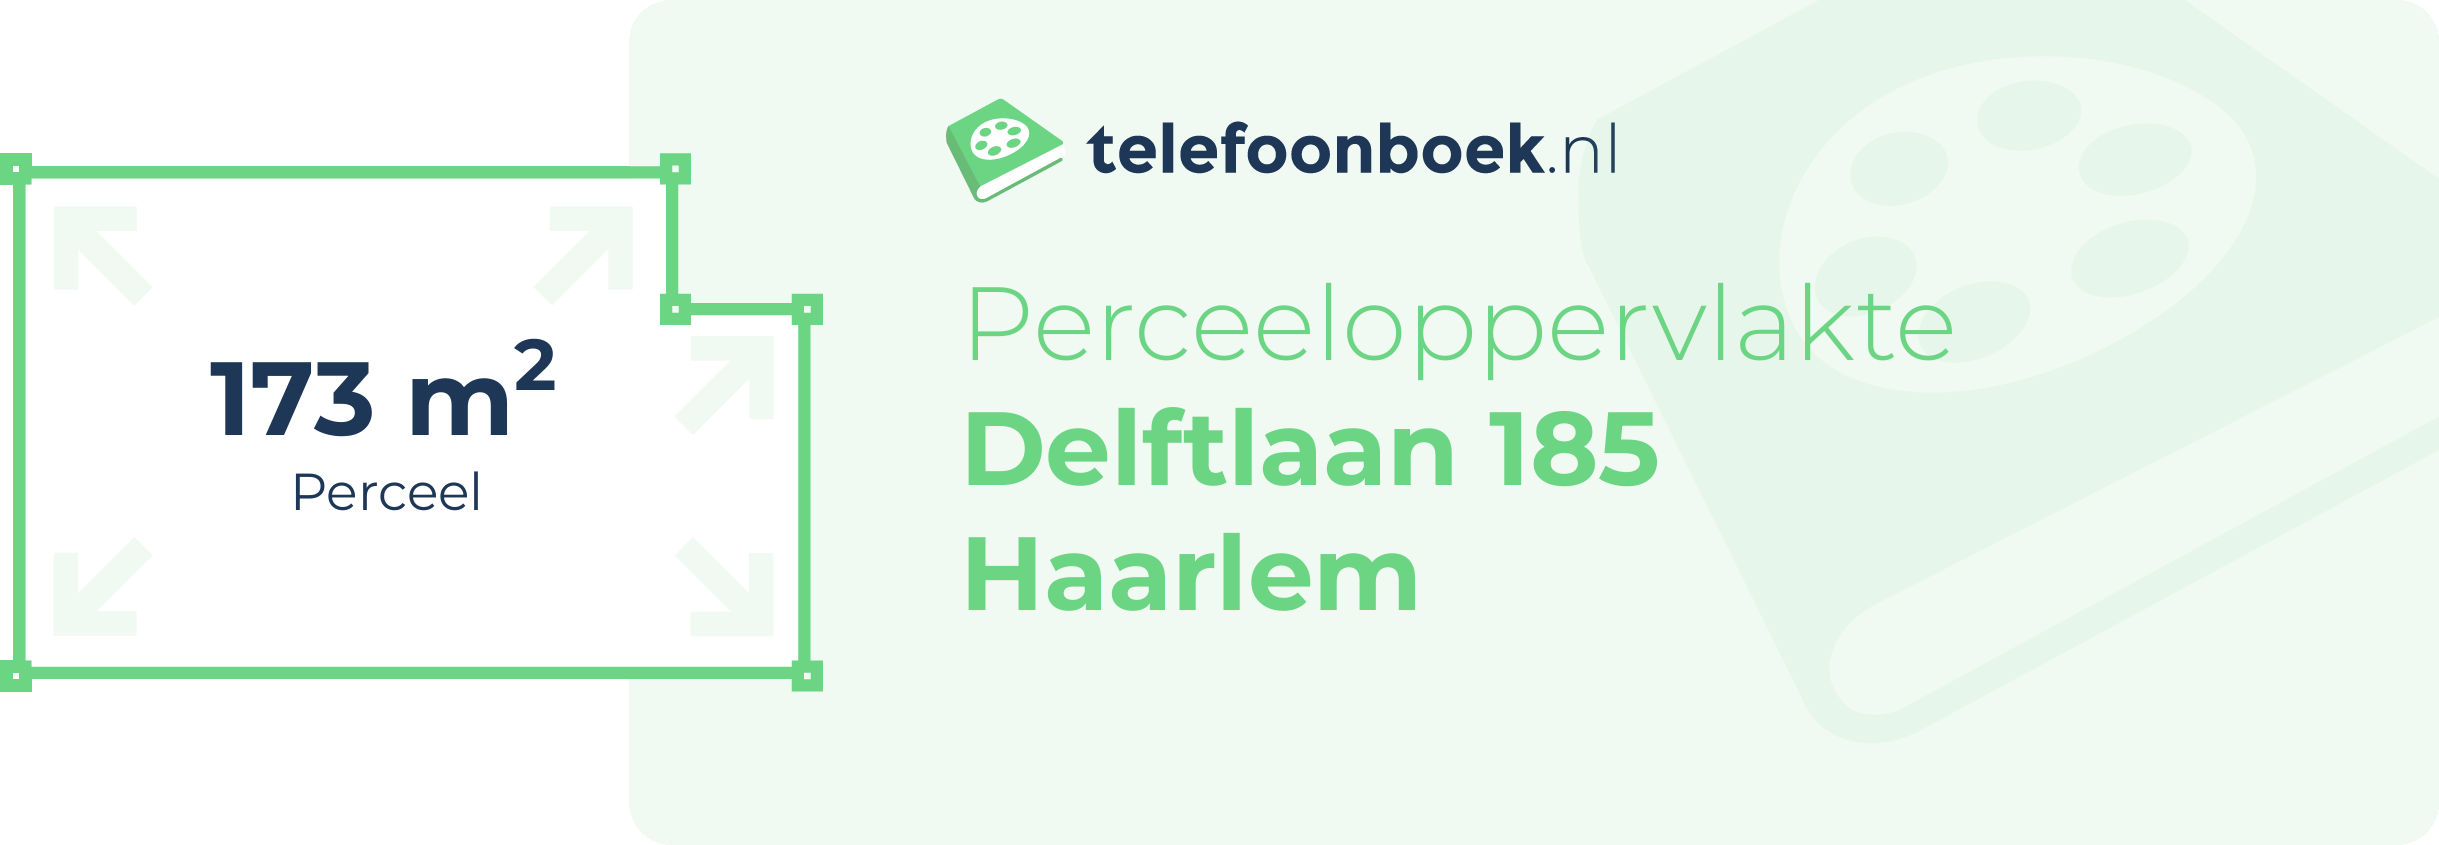 Perceeloppervlakte Delftlaan 185 Haarlem